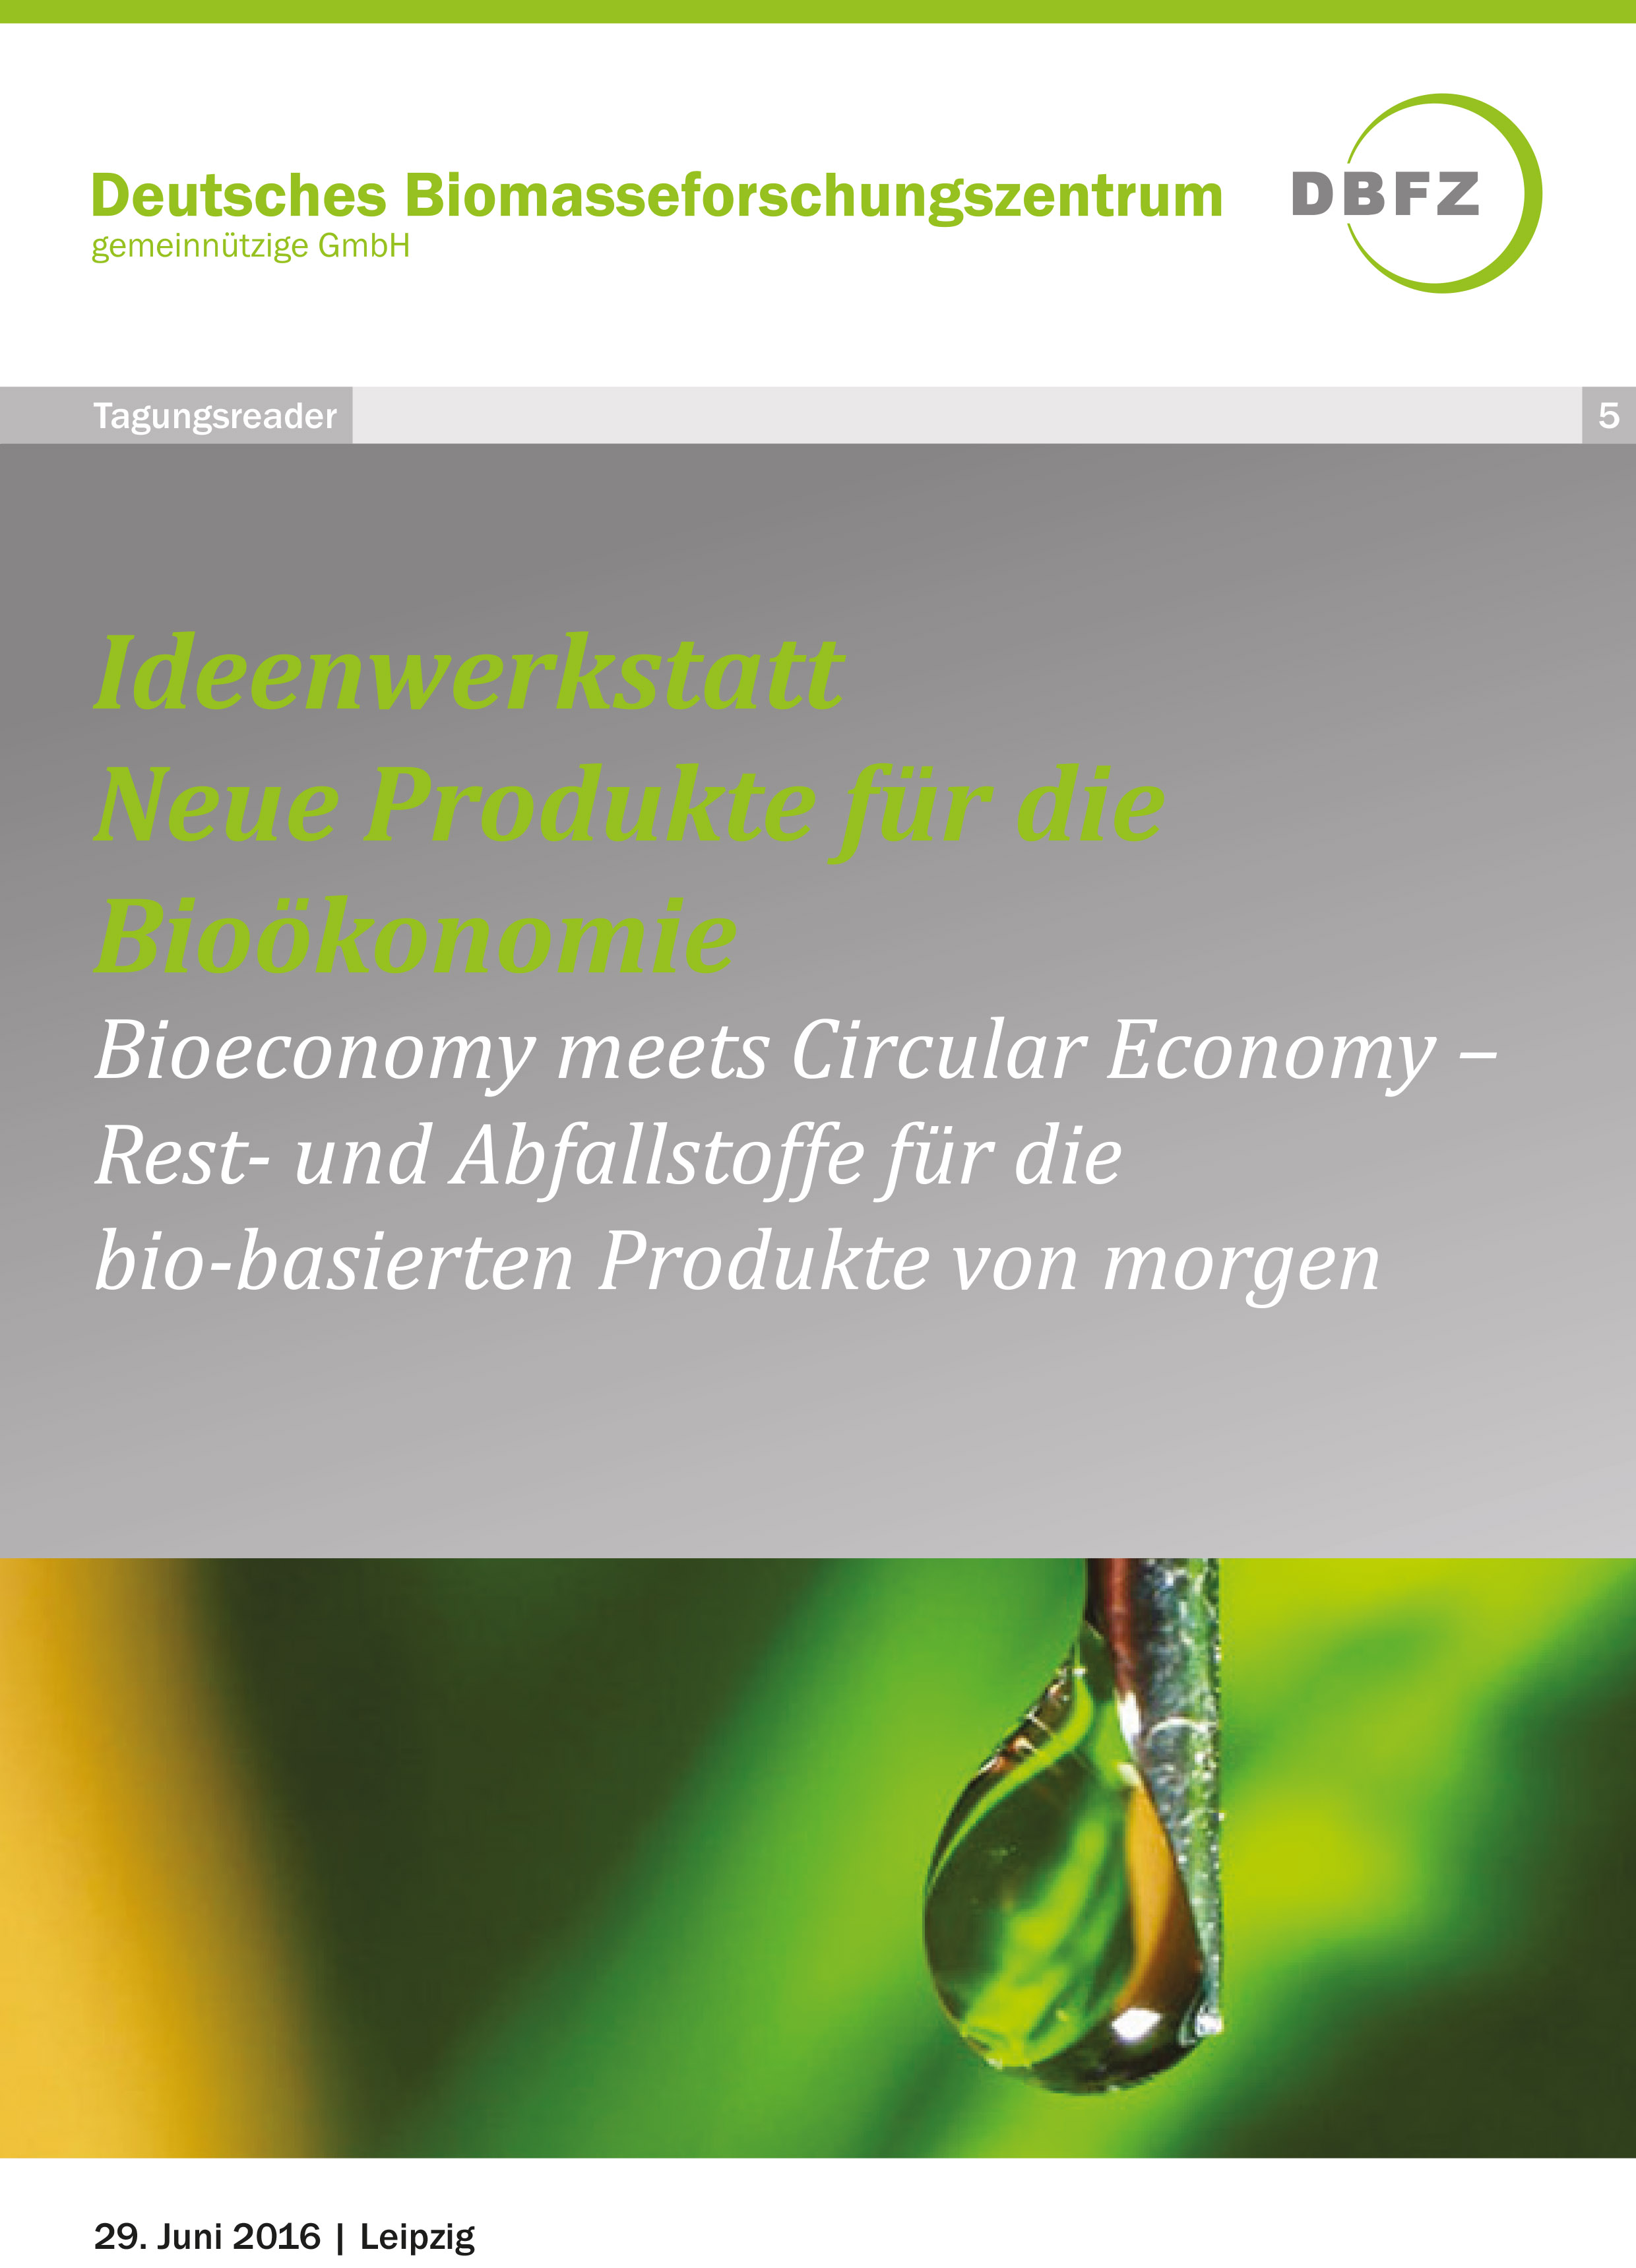 Workshop: Ideenwerkstatt Neue Produkte für die Bioökonomie